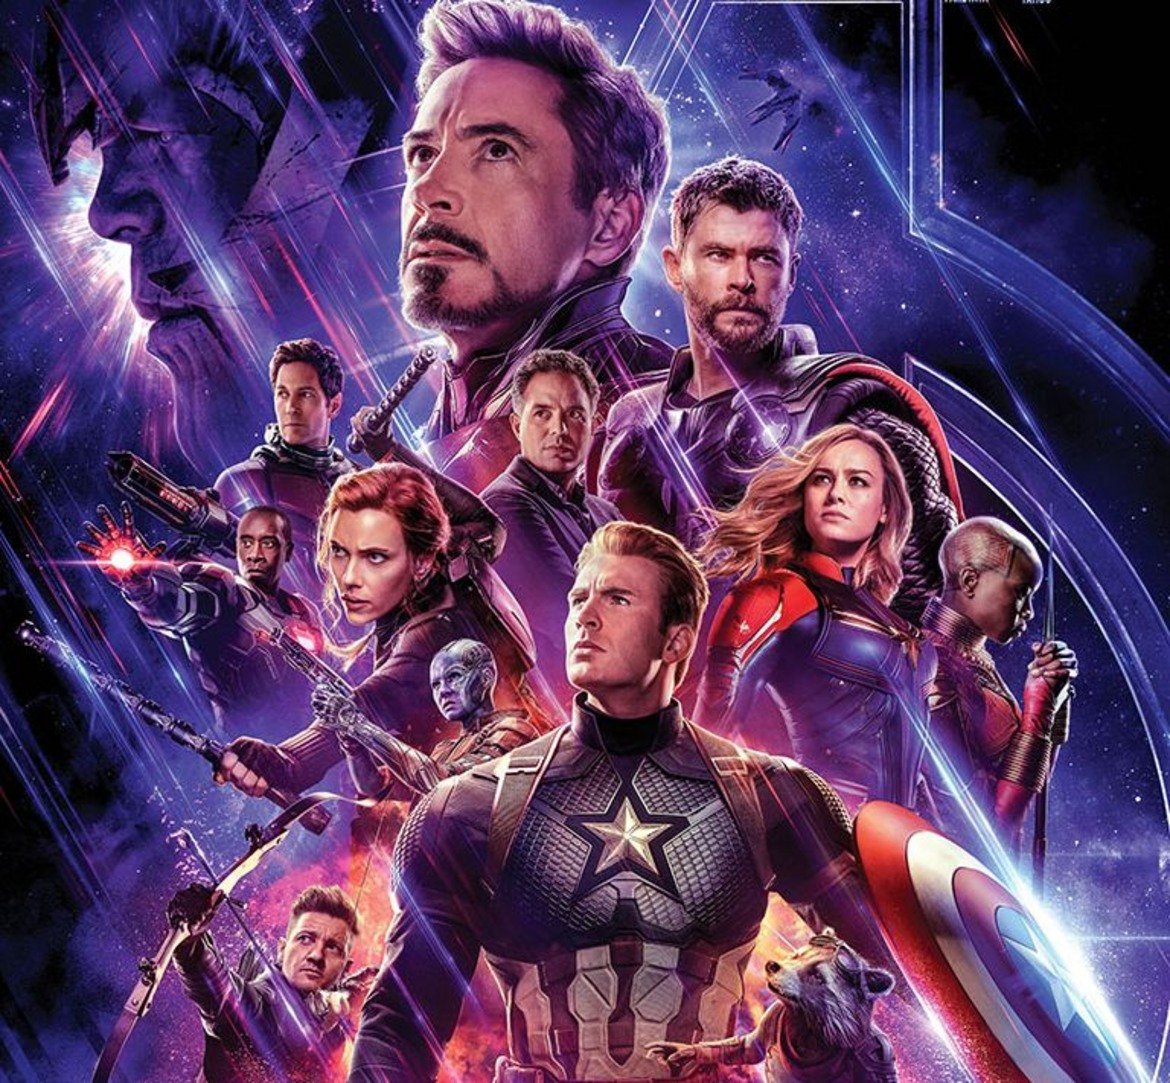 "Отмъстителите: Краят" (Avengers: Endgame) - 2,797 млрд. долара